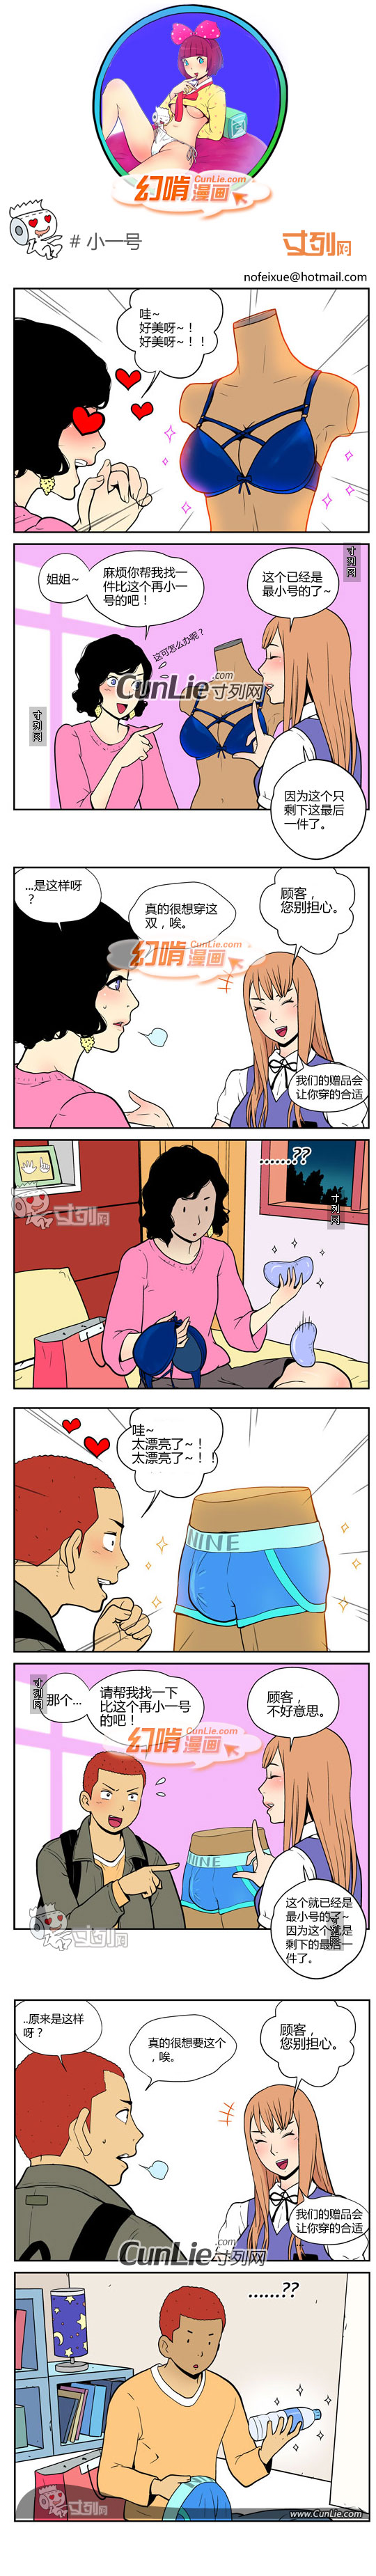 幻啃漫画小一号